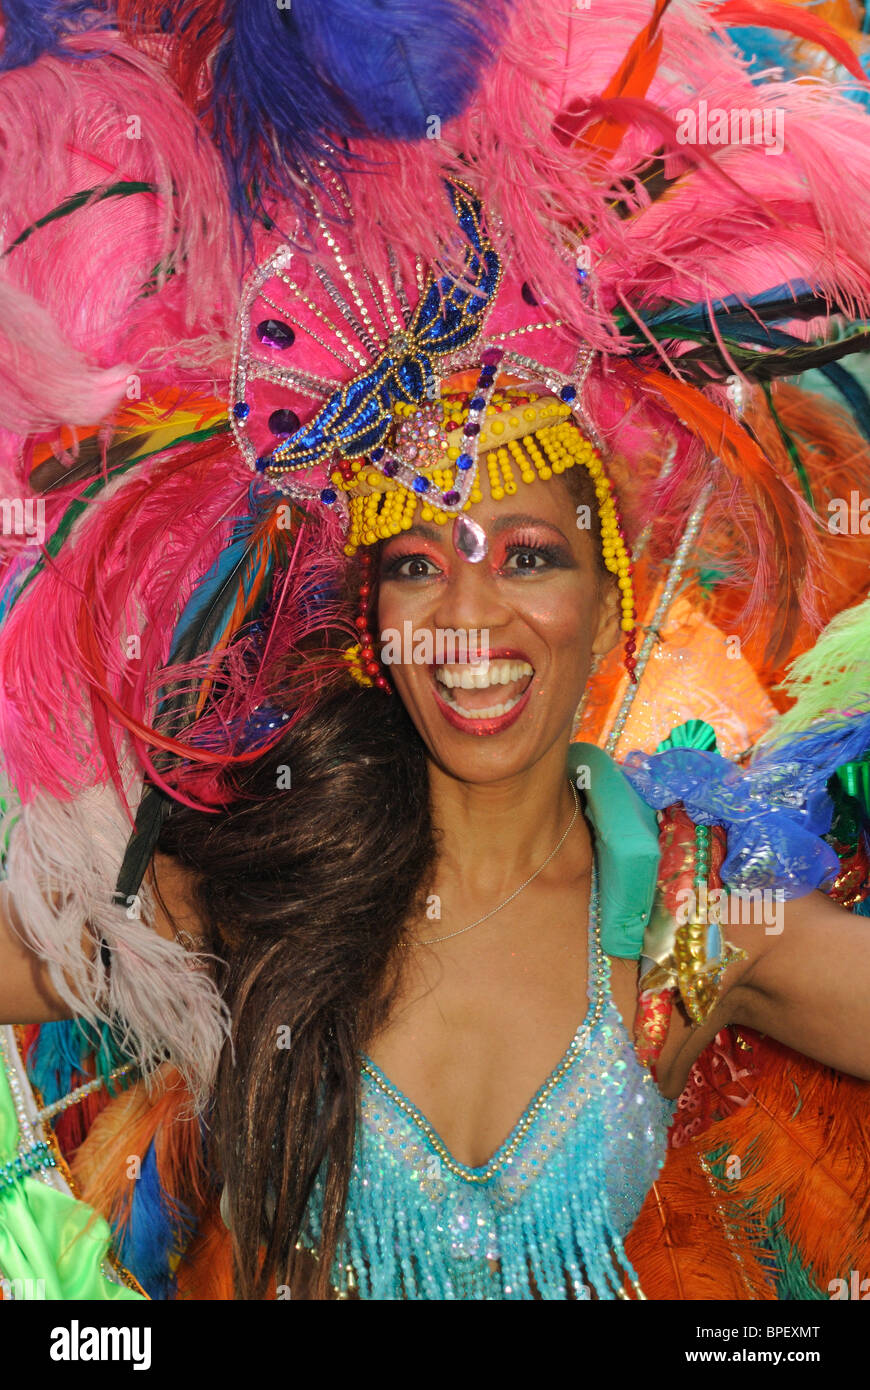 Danseuse de samba brésilienne. Sonia de Oliveira de Amasonia école de samba, Carnaval des Cultures à Berlin, Allemagne, Europe. Banque D'Images